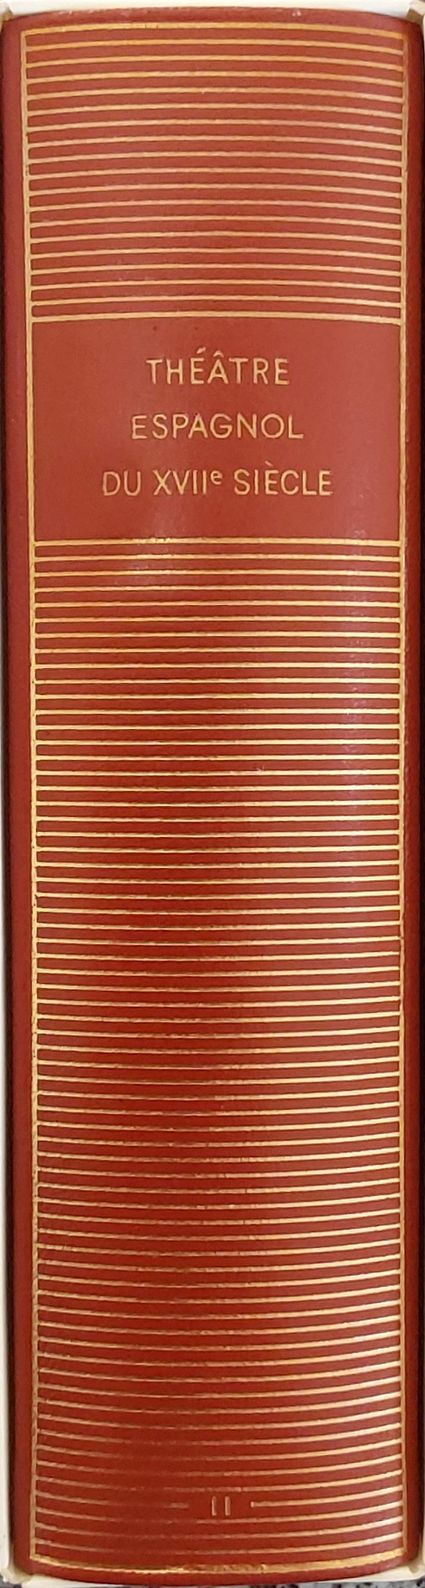 Volume 510 de Collectifs du XVIIeme dans la Bibliothèque de la Pléiade.